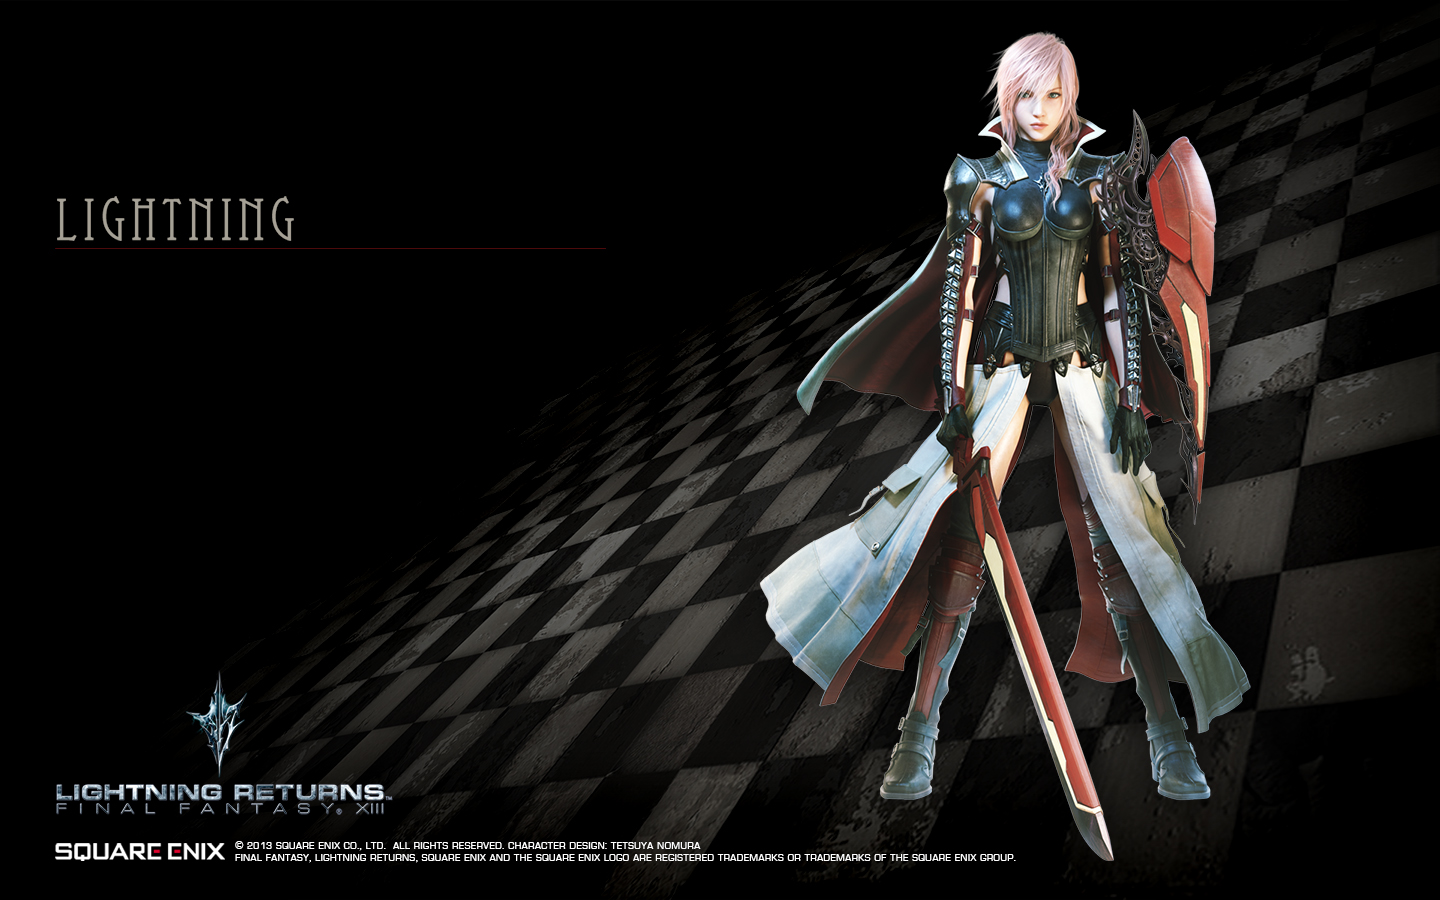 Lightning Returns Final Fantasy Xiii Lr Ff13 Wallpaper The Final Fantasy